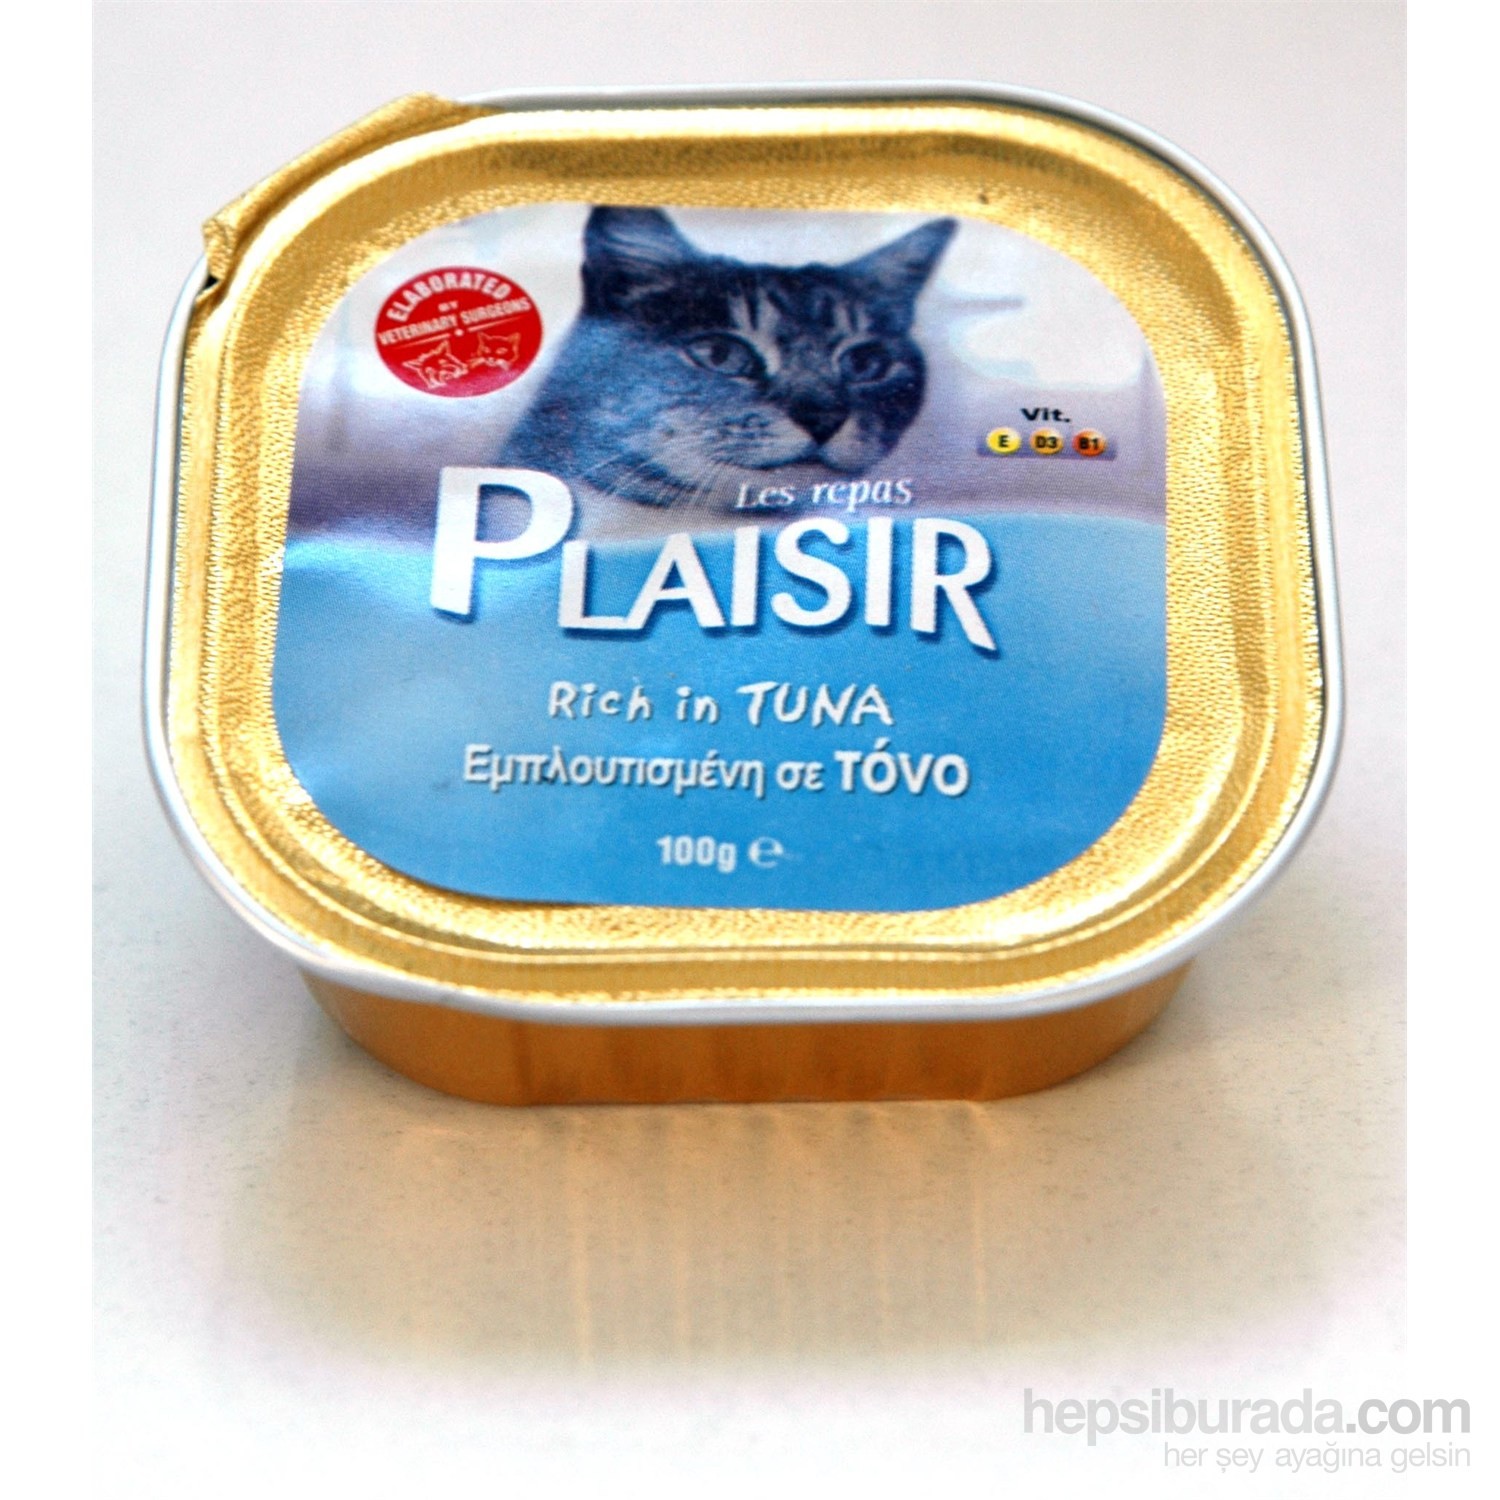 Plaisir Pate Tuna Etli Yaş Kedi Maması 100 Gr Fiyatı